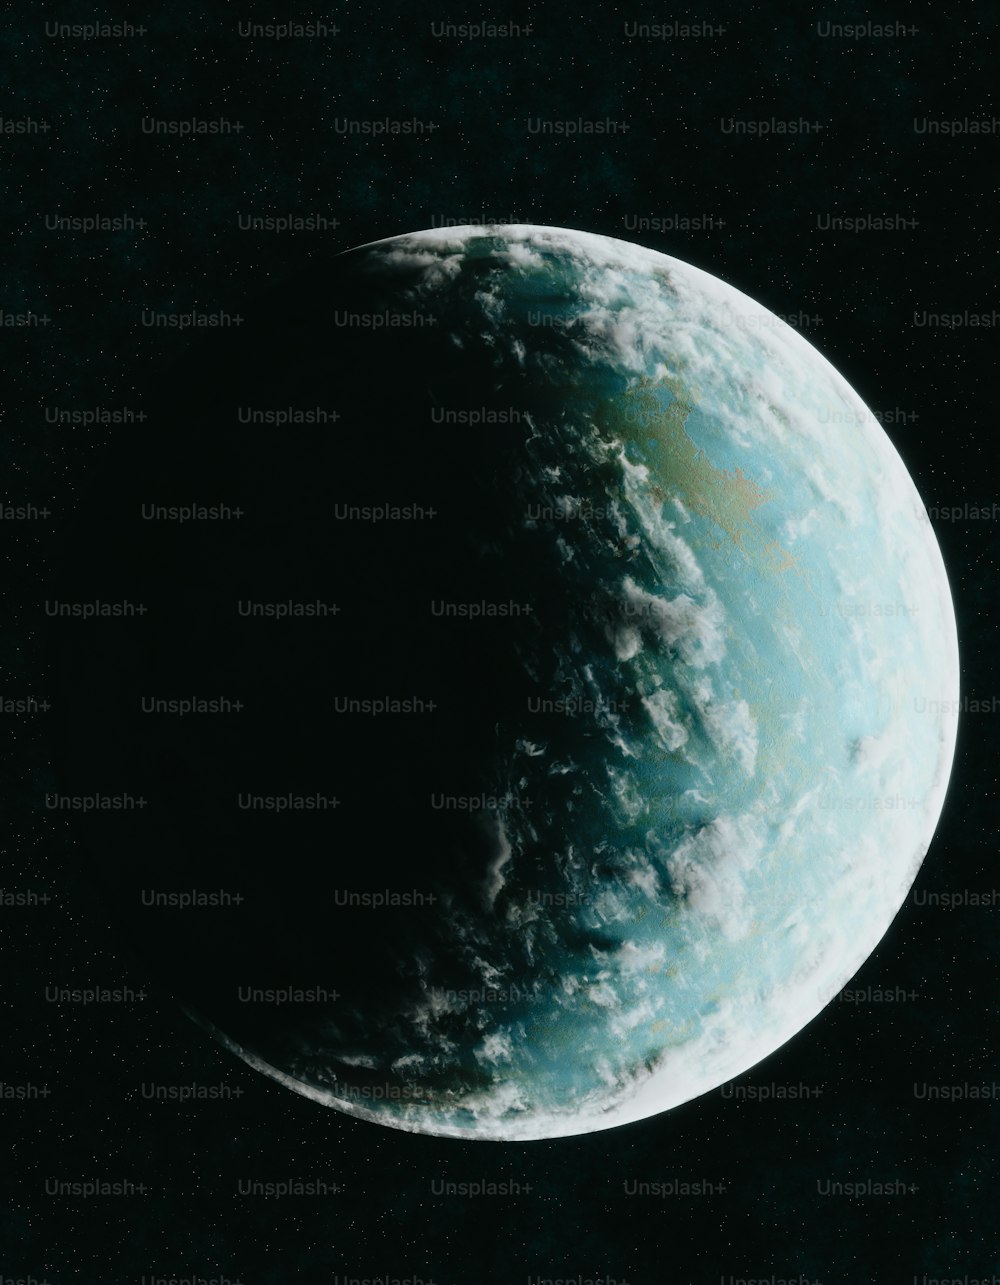 Representación artística de un planeta en el espacio